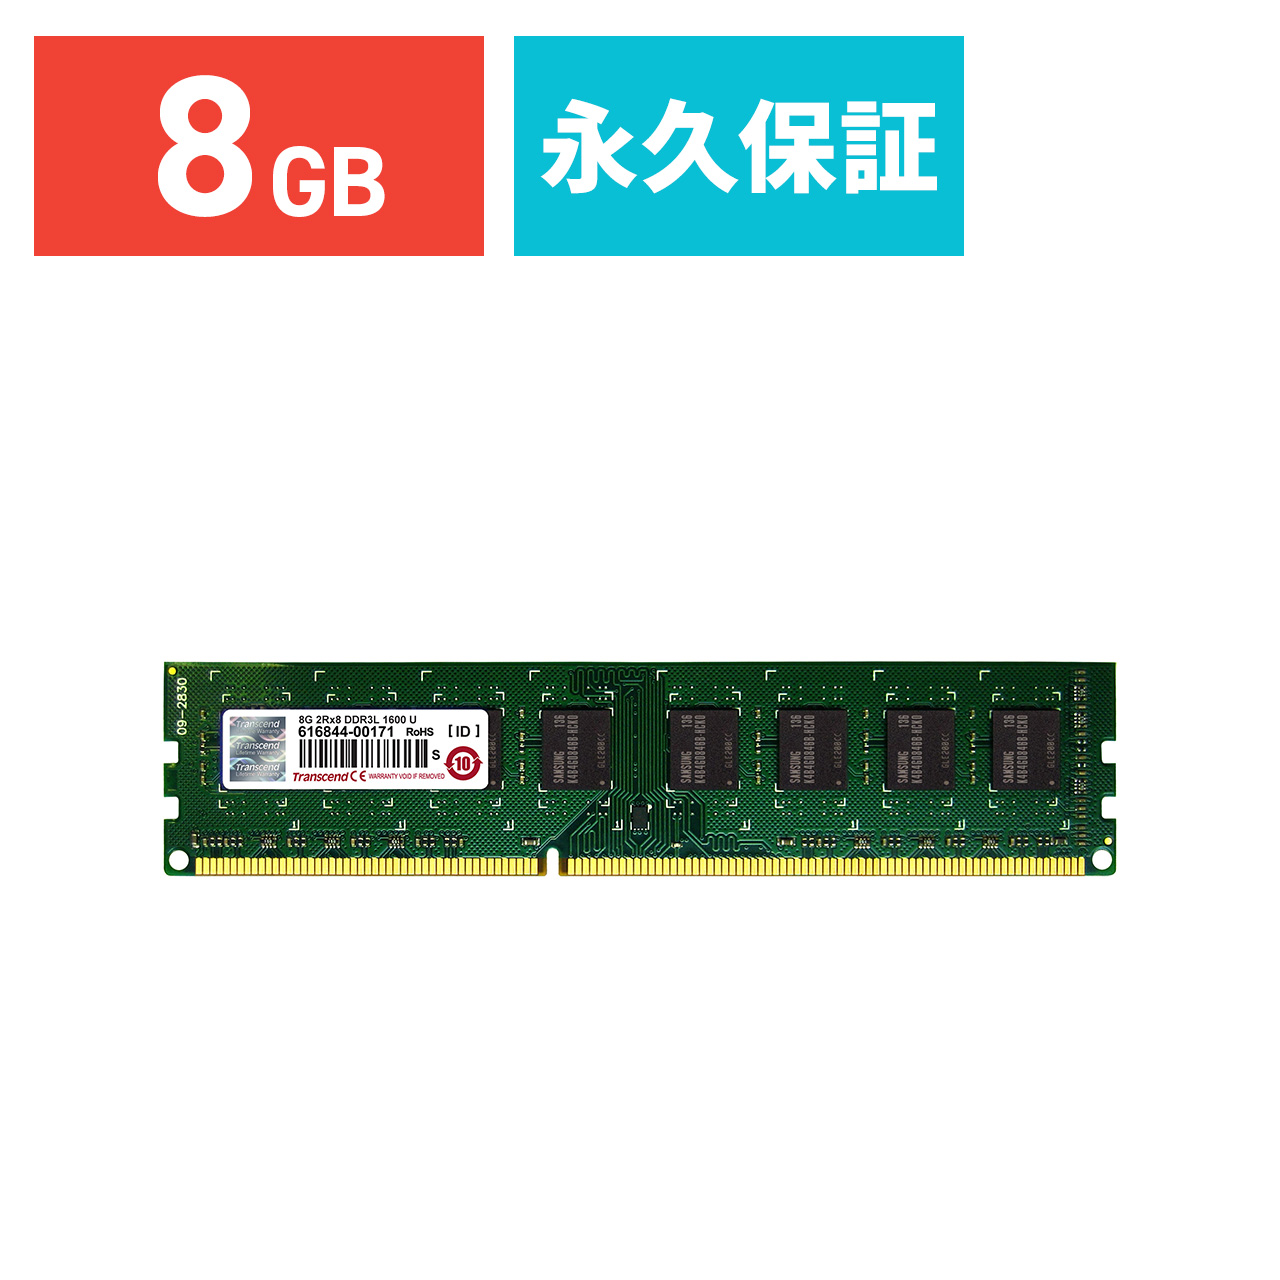 人気新品 93%OFF Transcend 増設メモリ 8GB DDR3L-1600 PC3L-12800 DIMM PCメモリ メモリー モジュール elma-ultrasonic.be elma-ultrasonic.be